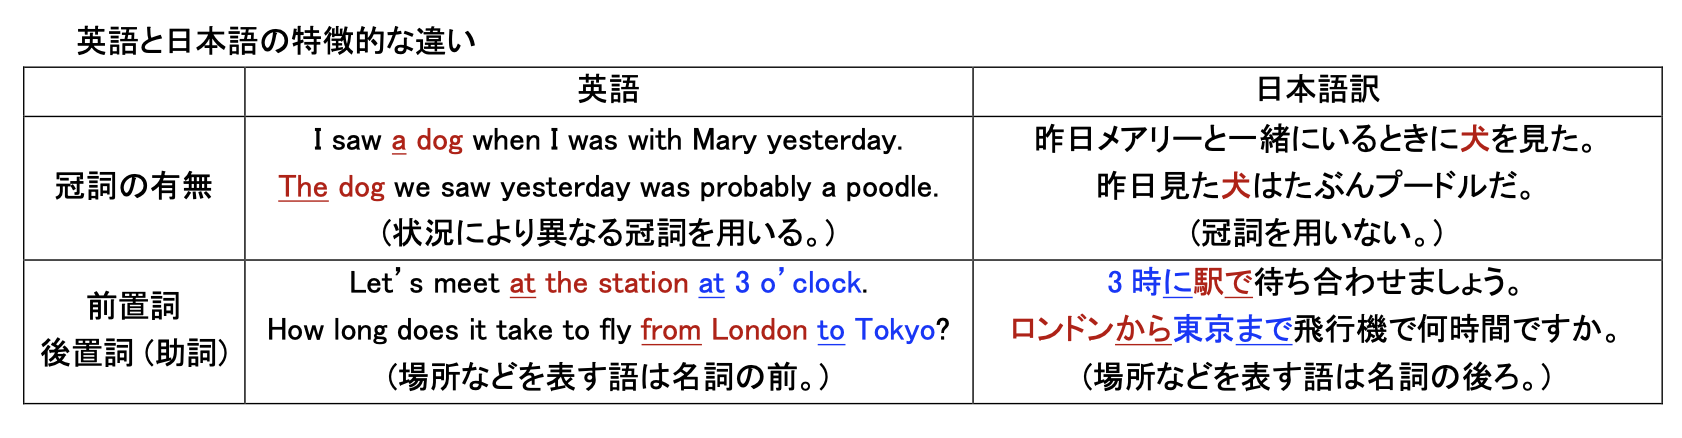 英語と日本語の特徴的な違いに関する図